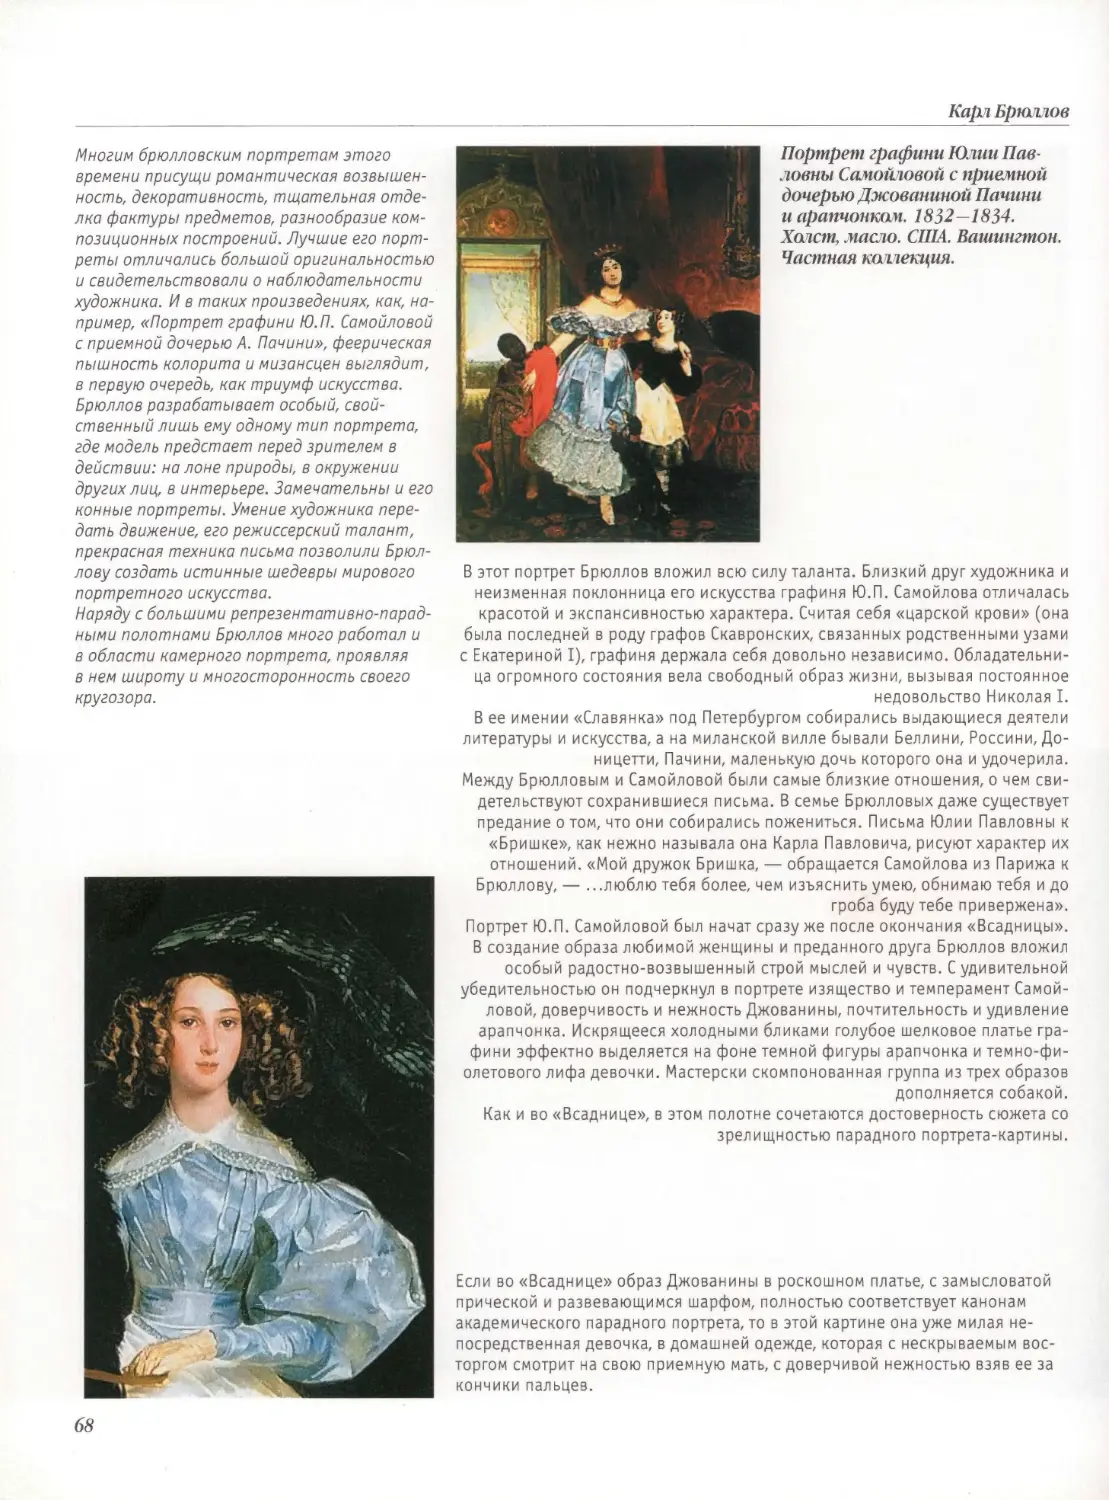 Портрет графини Ю.П.Самойловой с приемной дочерью Джованиной Пачини и арапчонком